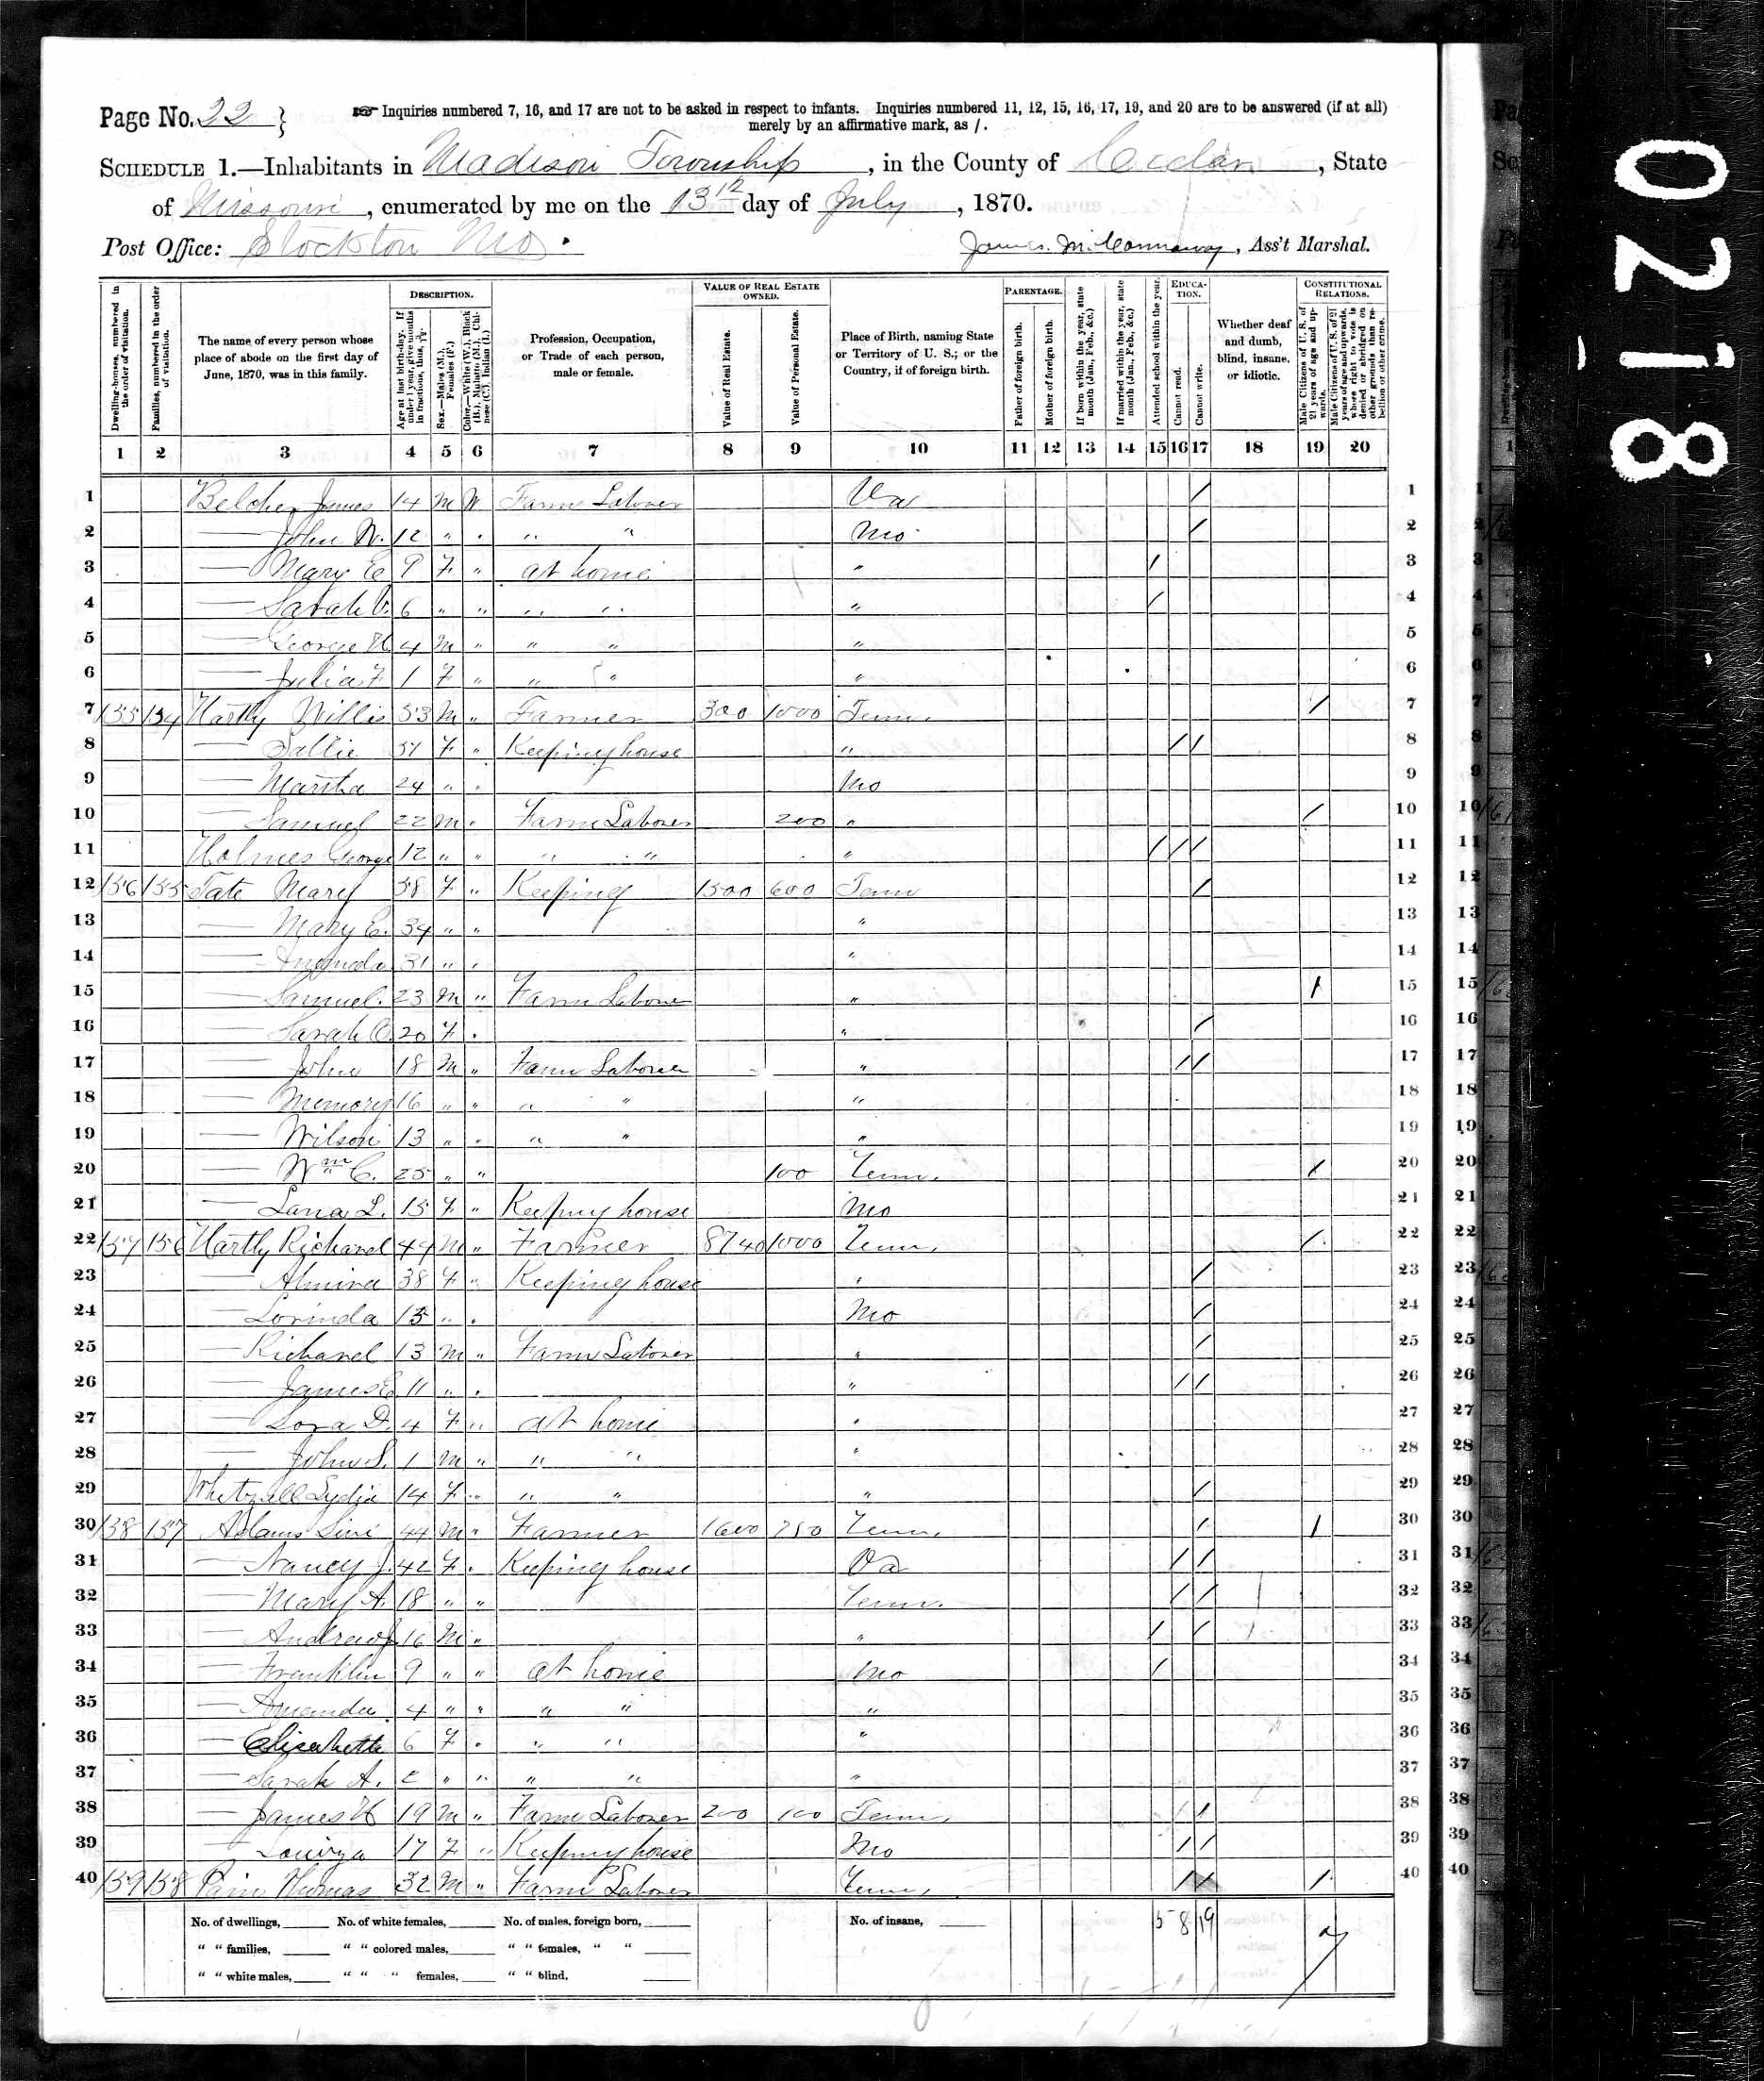 Willis Hartley, 1870 Cedar County, Missouri, census